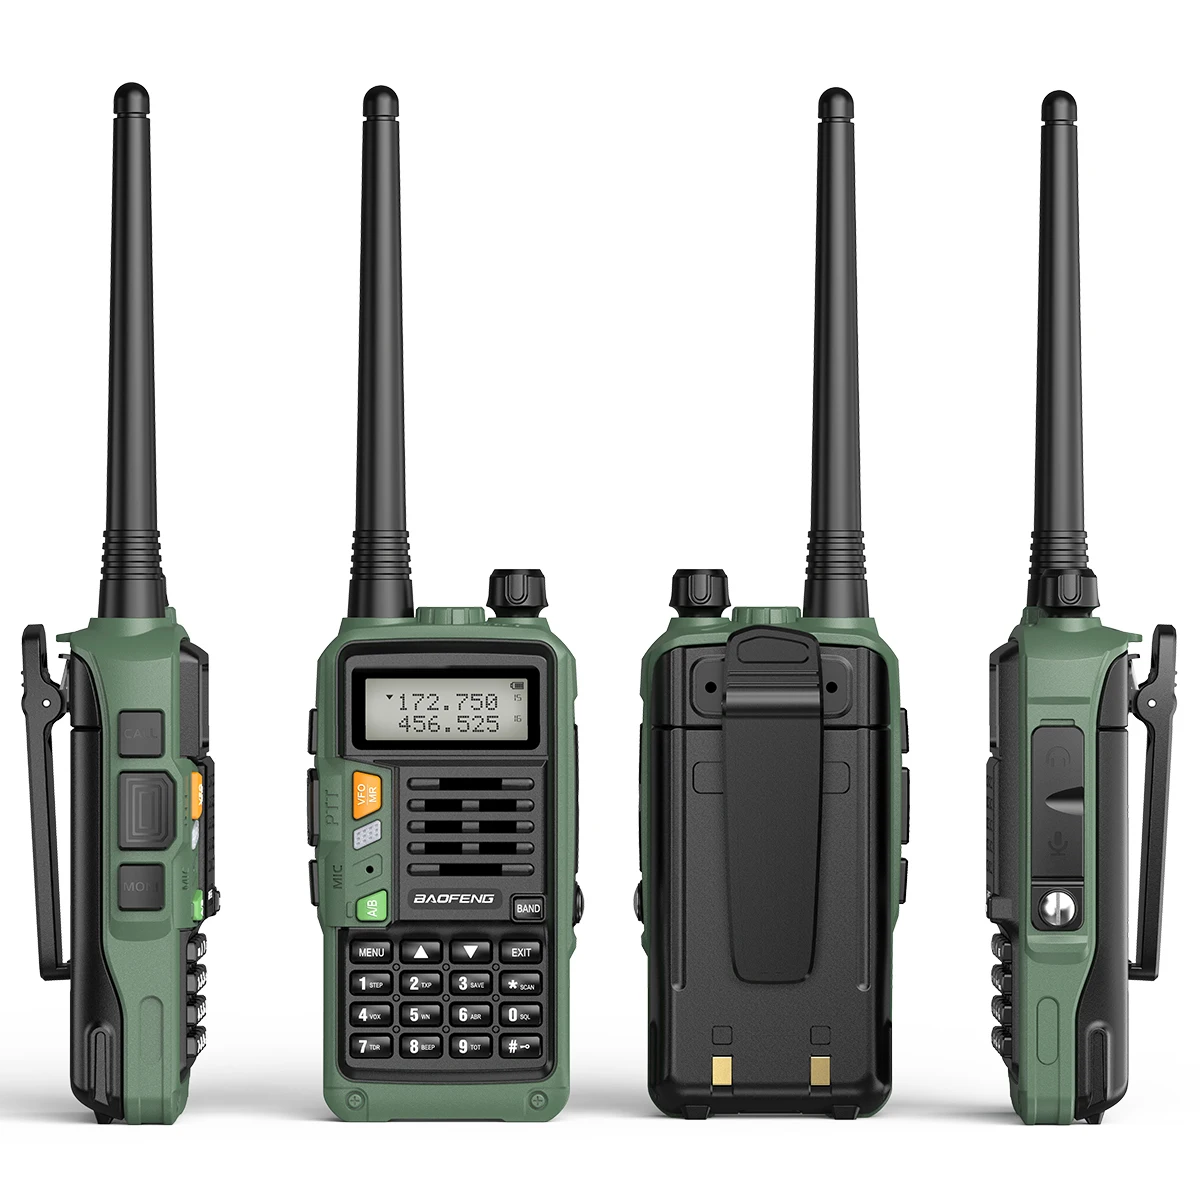 Baofeng UV-S9 PLUS 10W High Powerful 50km VHF/UHF Long Range Two Way Radio Walkie Talkie CB Ham Portable Radio UV-5R For Hunting